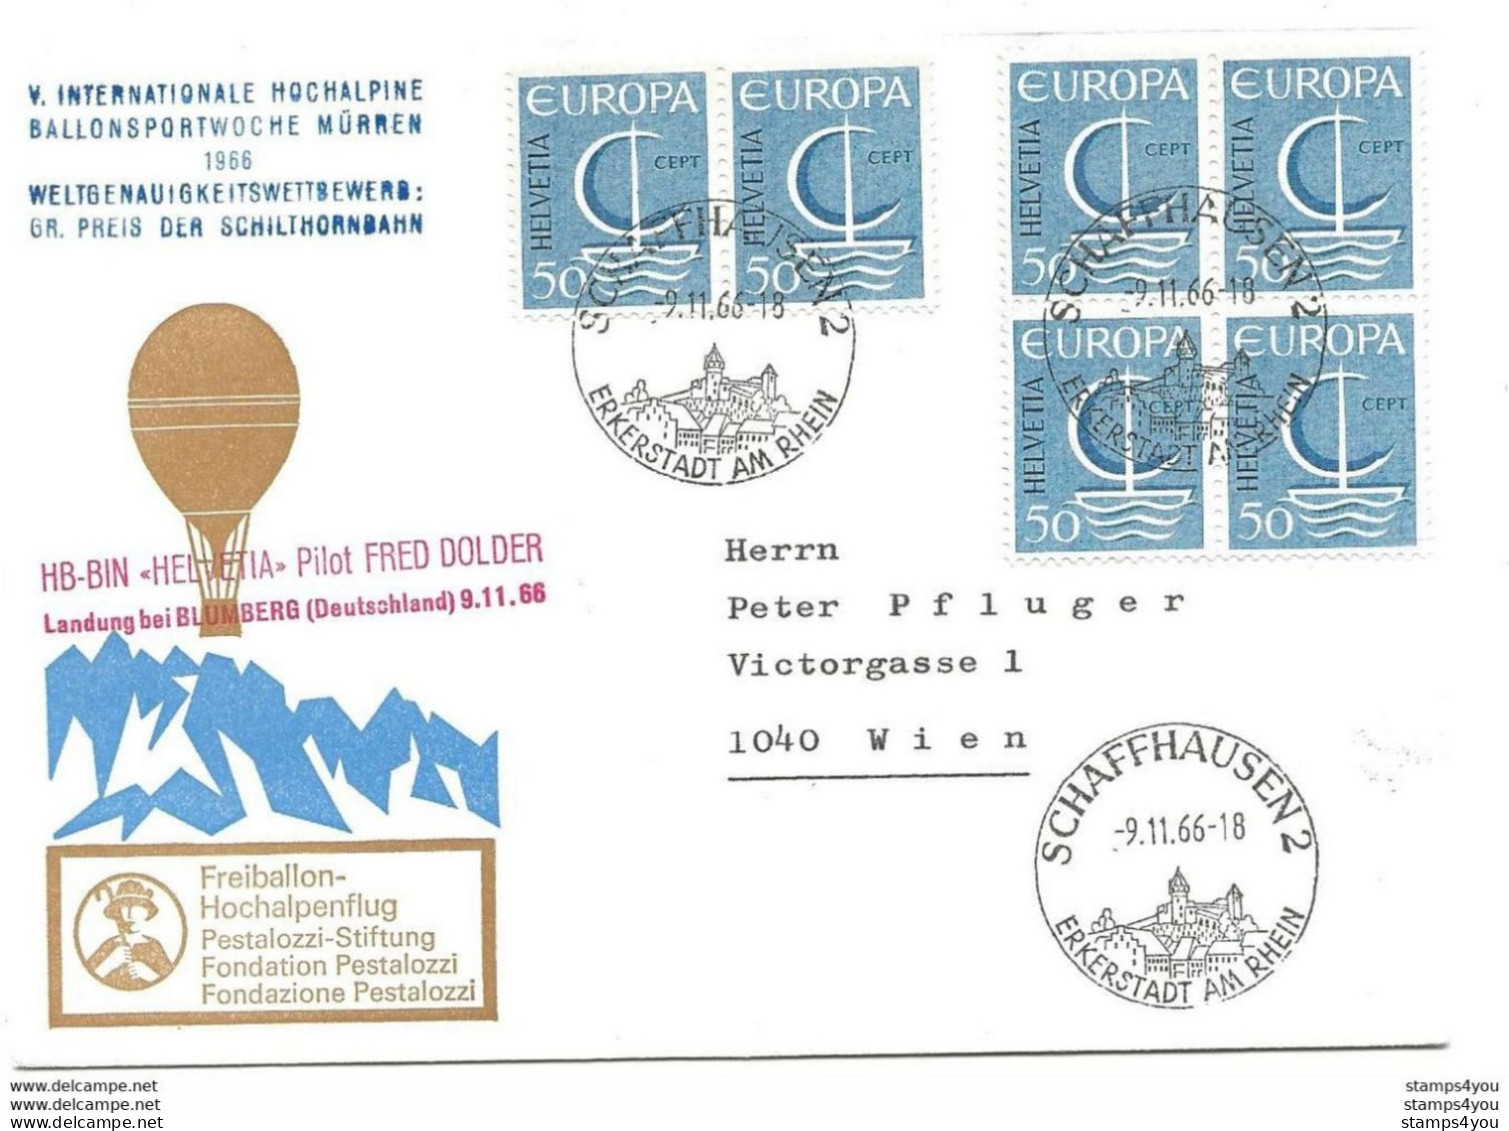 245 - 14 - Enveloppe Suisse Vol Ballon "Hochalpine Ballonsportwoche Mürren 1966" Affranchissement Timbres Europa - Idées Européennes